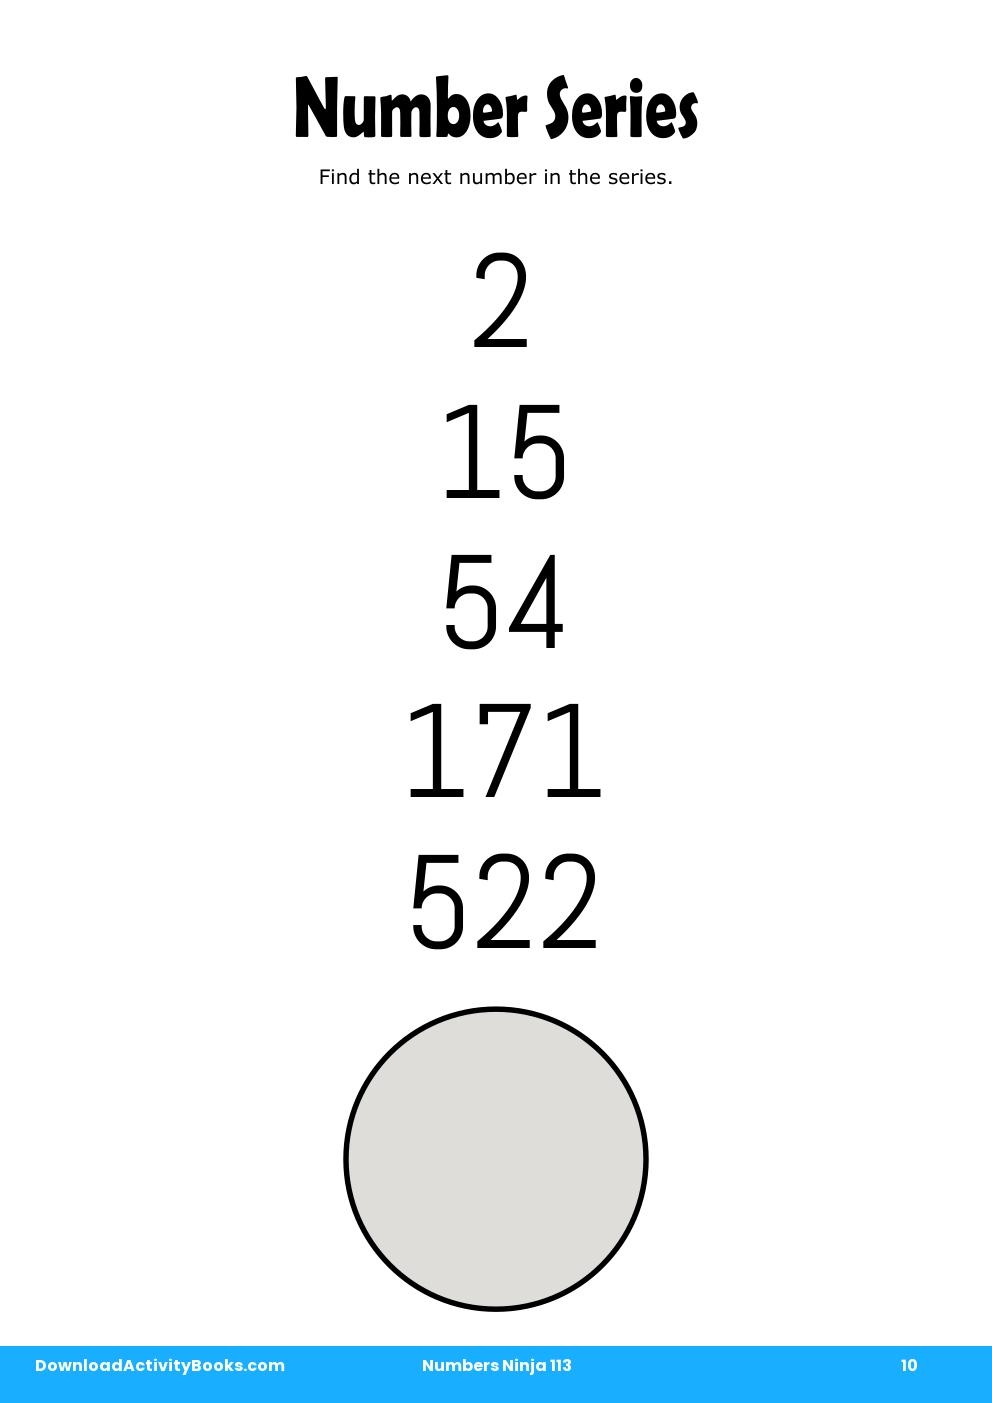 Number Series in Numbers Ninja 113